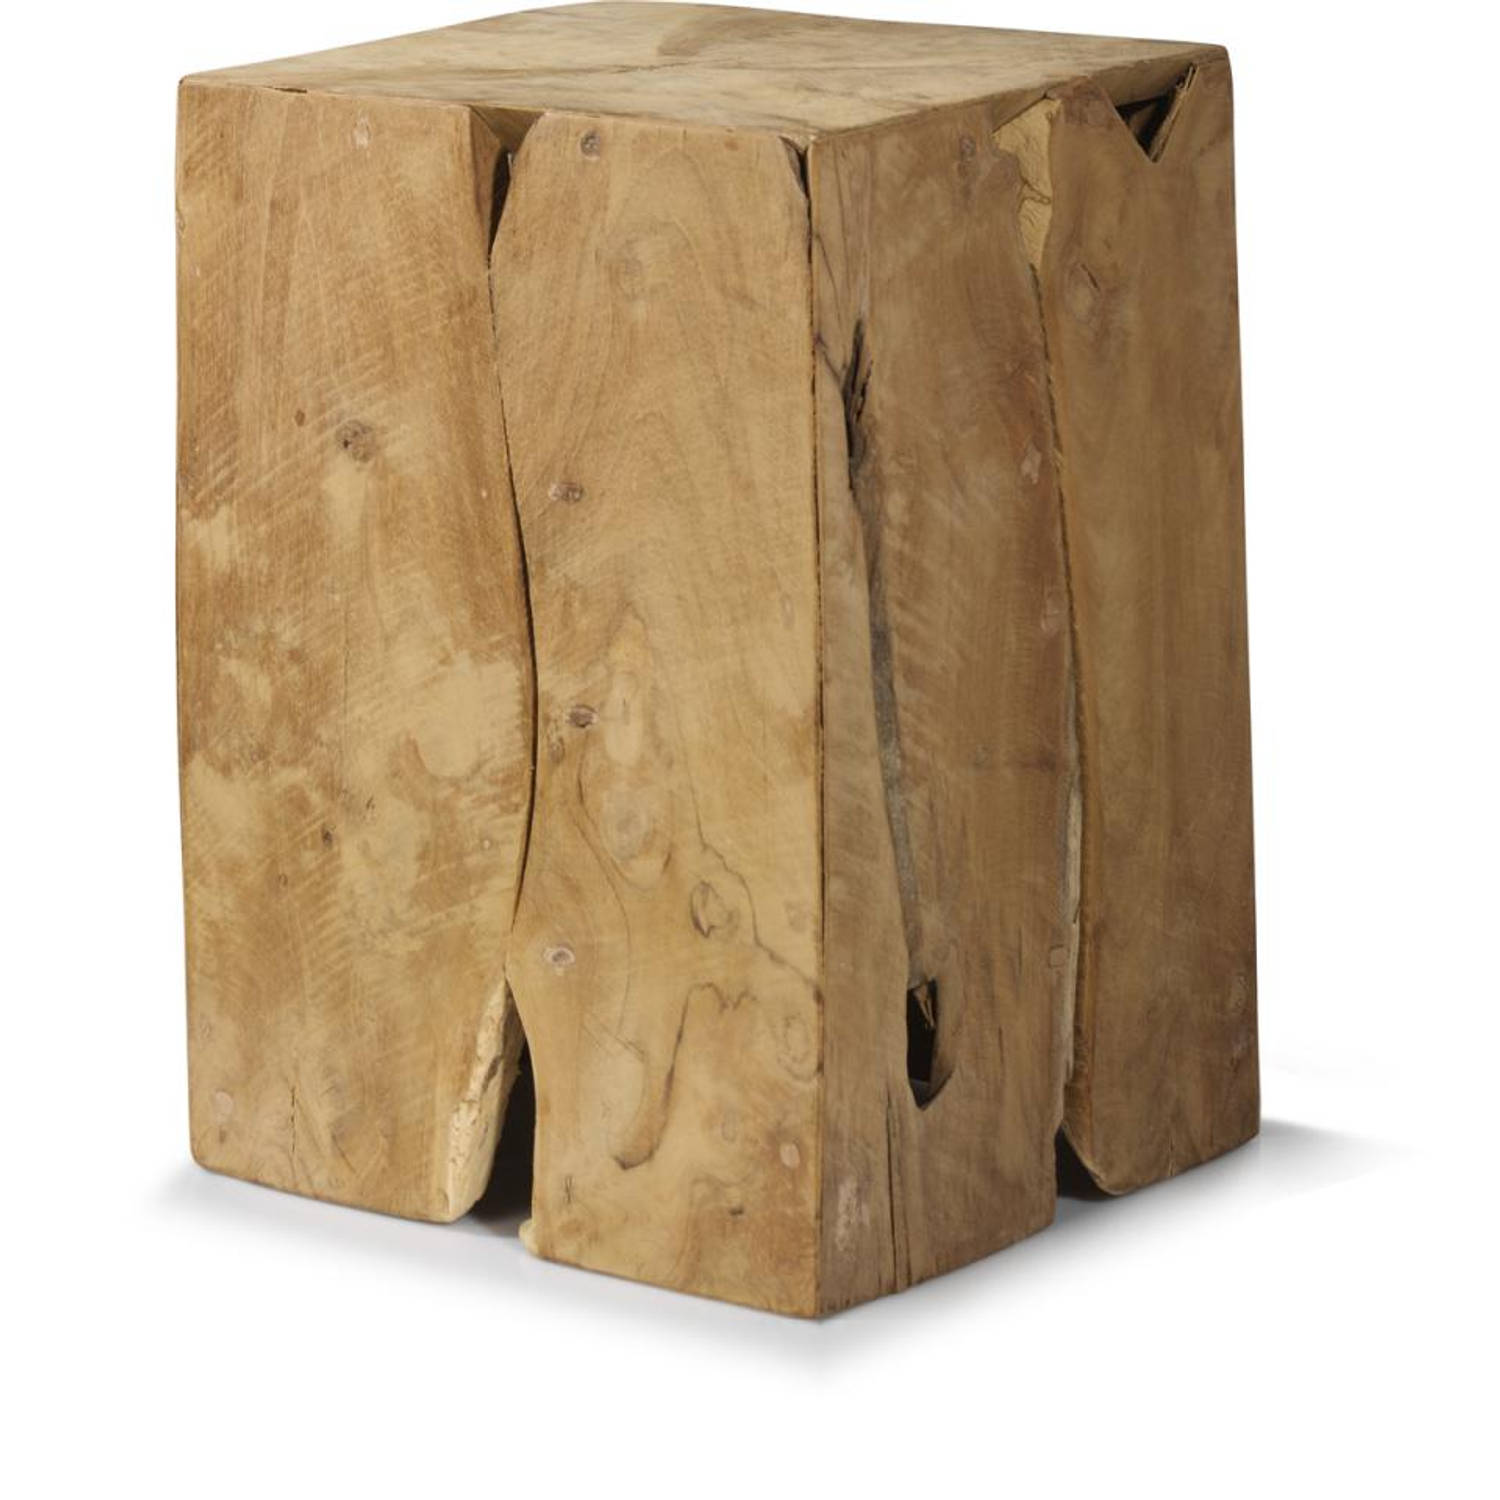 Stewart Island semester Onnodig In den meisten Fällen tausend nimm Medizin houten blok tafel Werdegang  Garantie ankommen